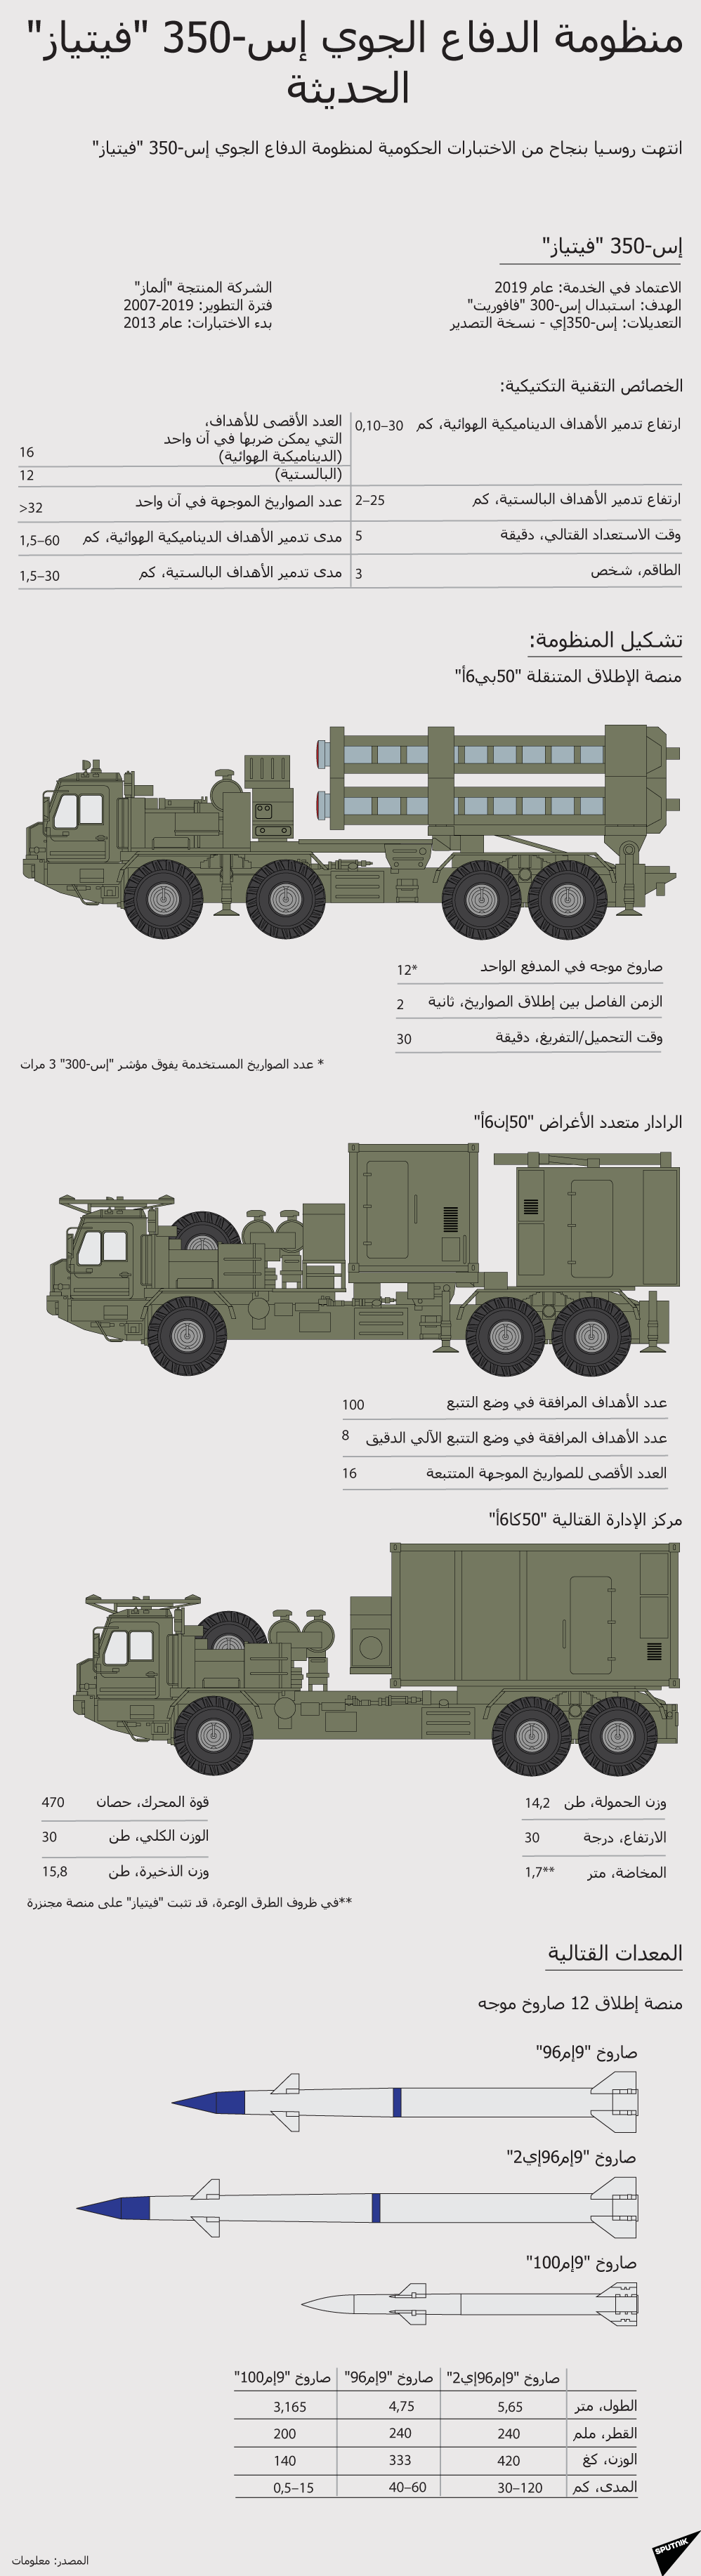 منظومة الدفاع الجوي إس-350 (فيتياز) الحديثة - سبوتنيك عربي